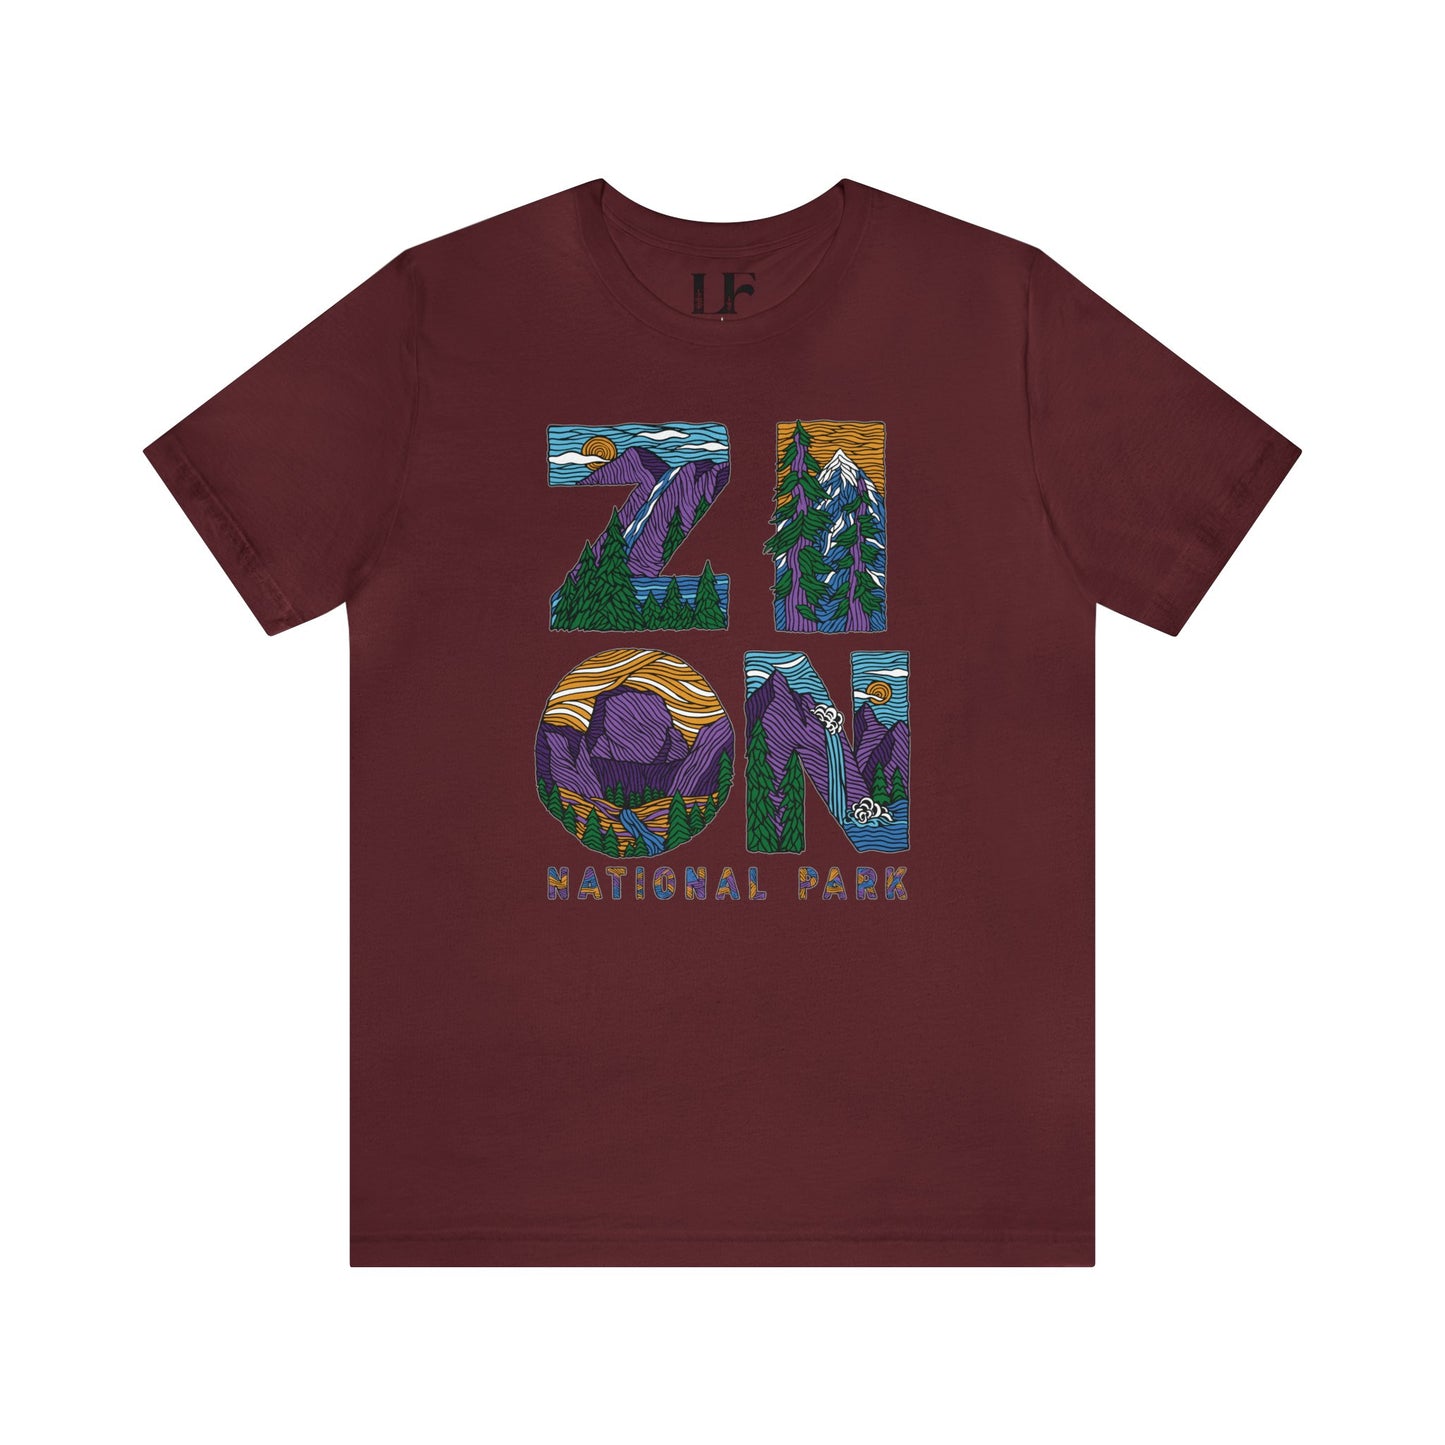 Zion National Park Shirt